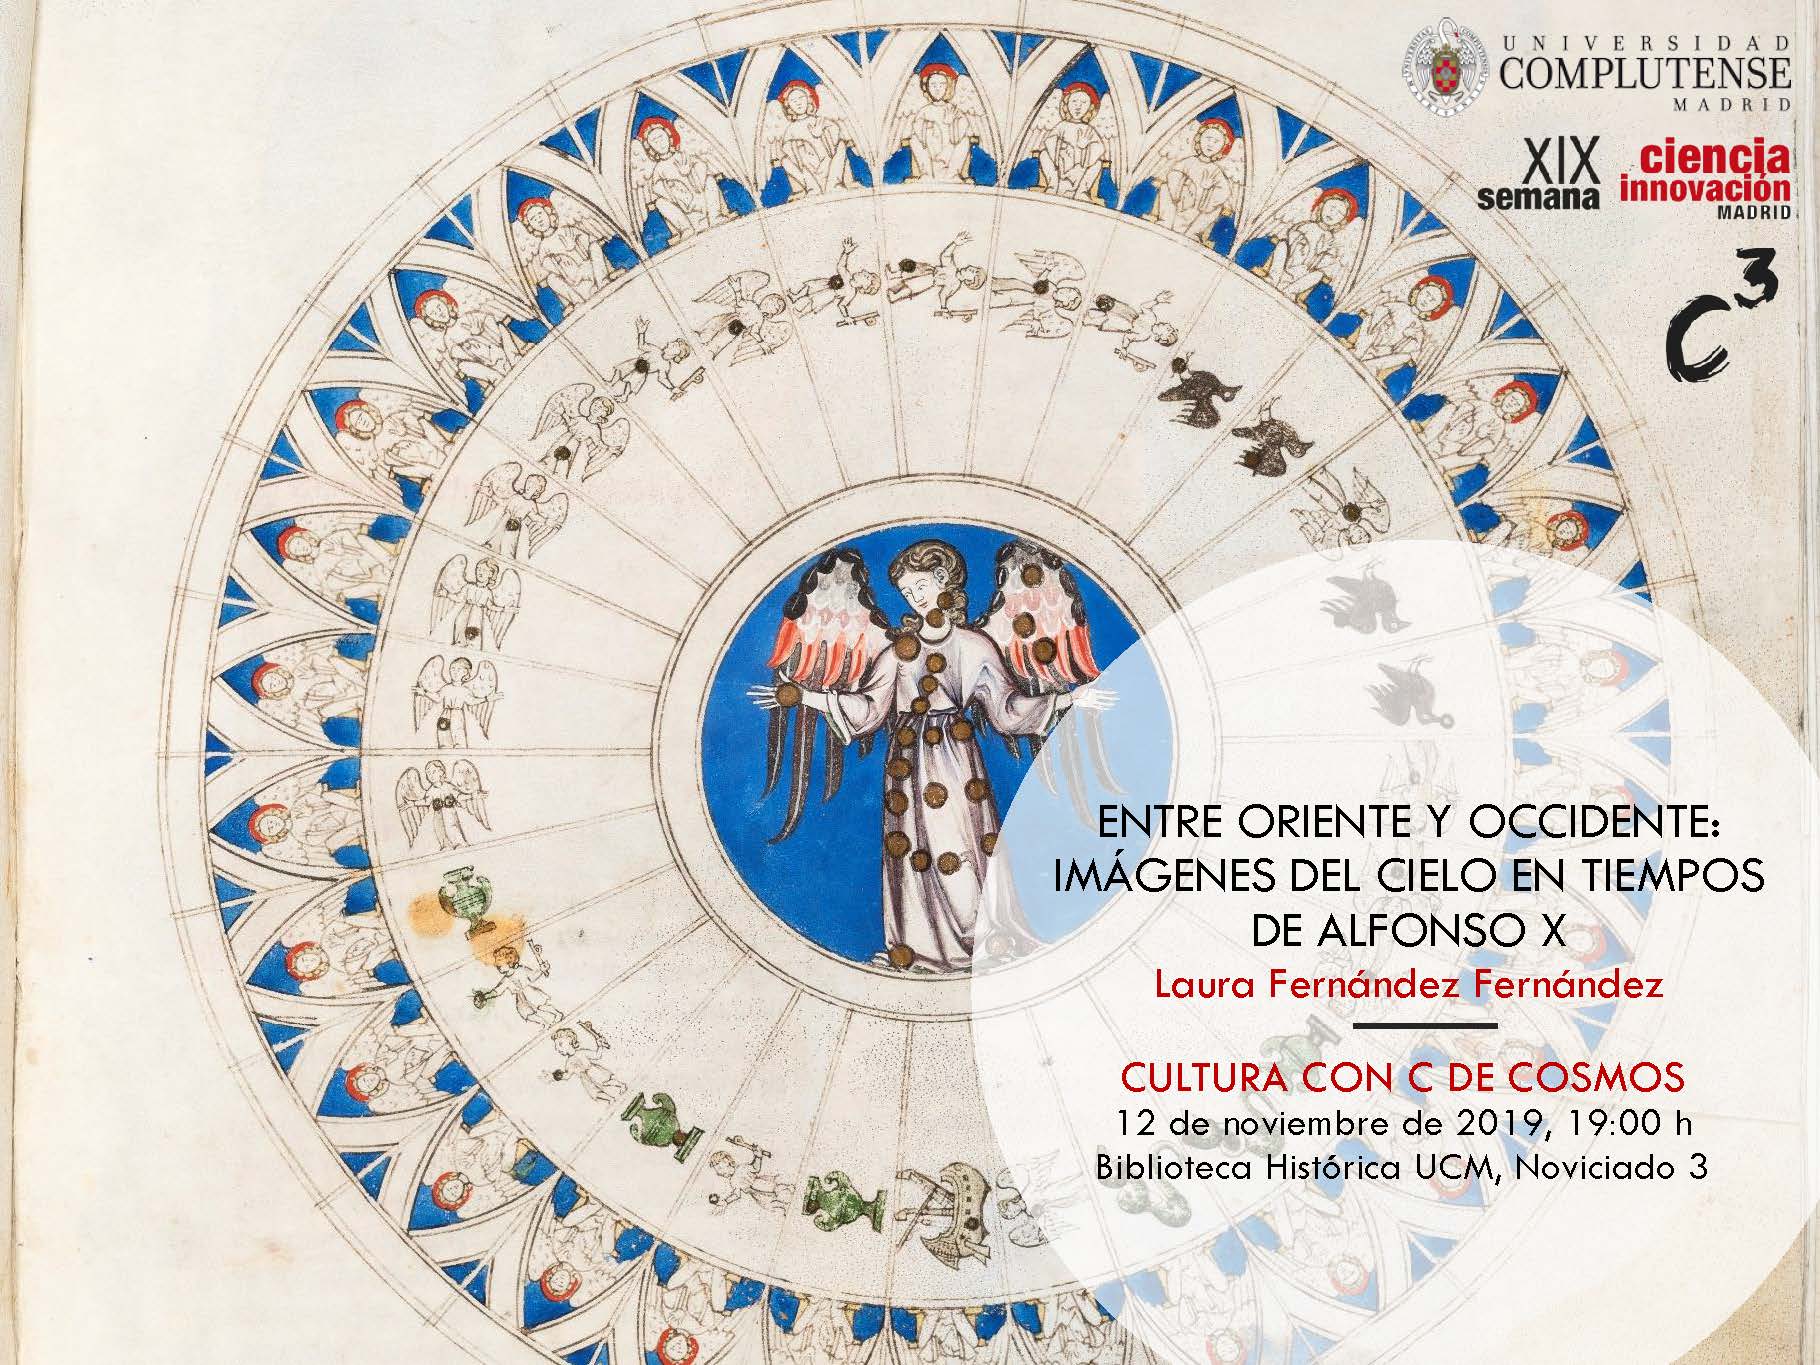 Entre Oriente y Occidente: Imágenes del cielo en tiempos de Alfonso X. 12 de noviembre de 2019. Biblioteca HIstórica UCM, 19:00 horas